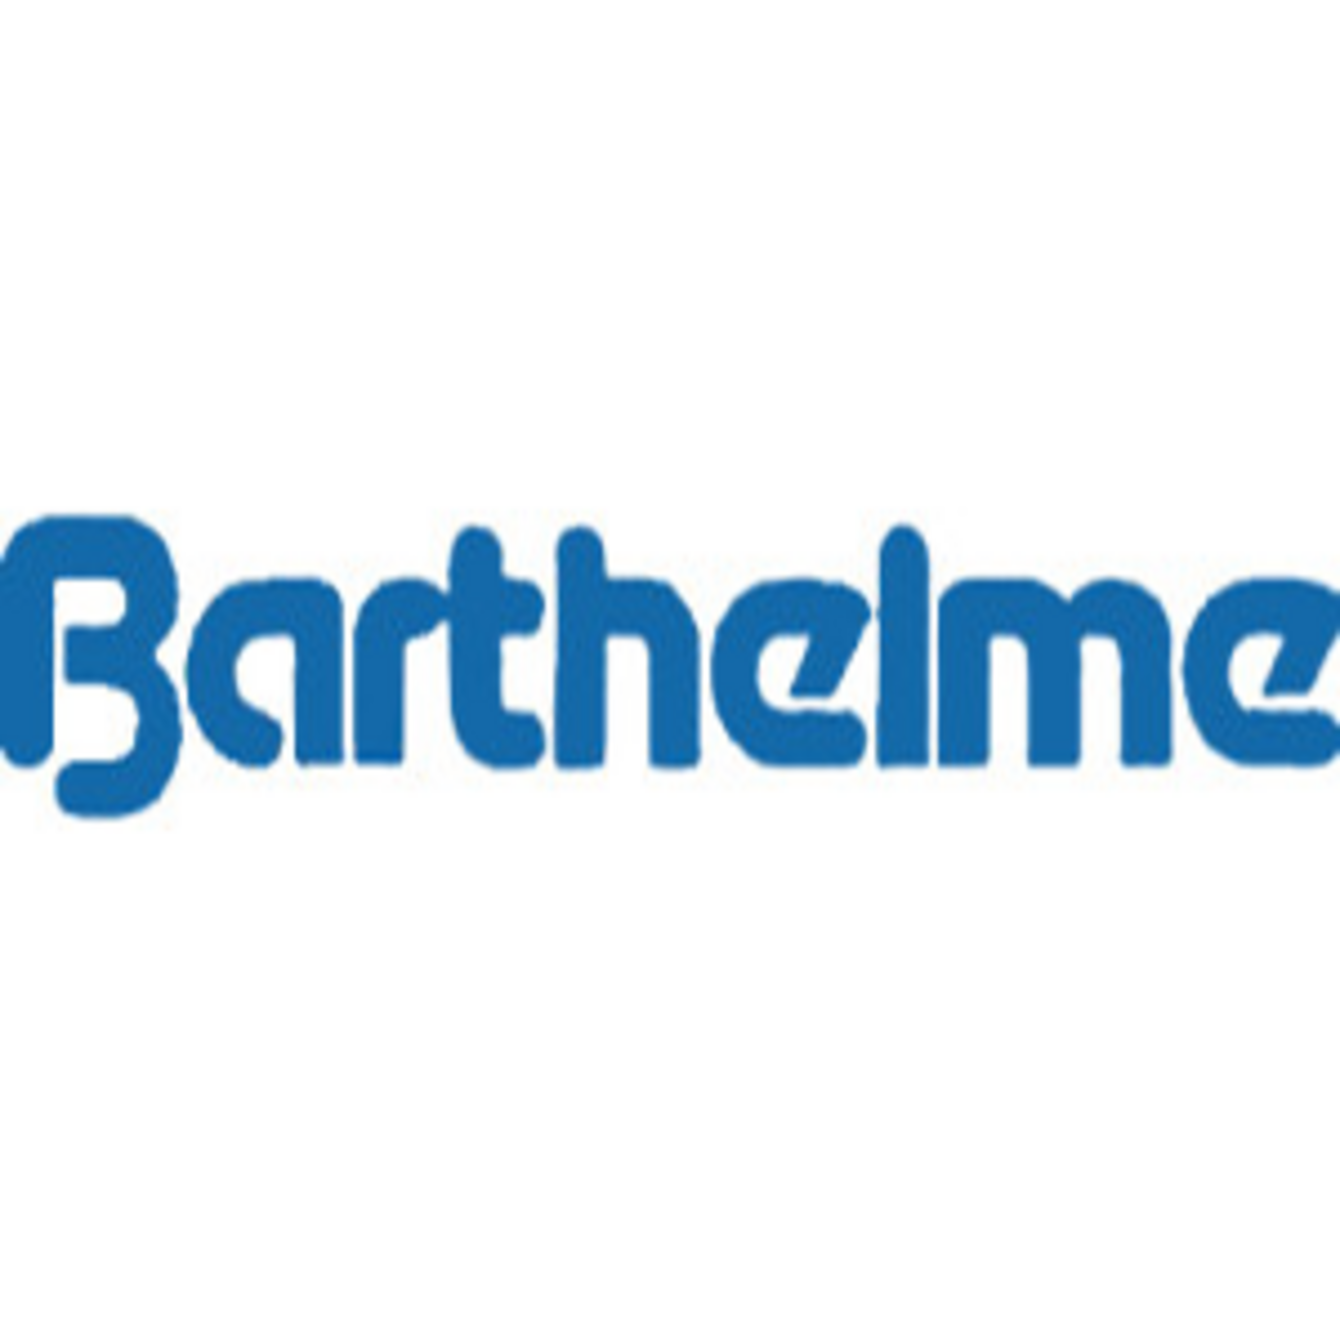 Barthelme logo bei Elektro Mühlbauer GmbH in Lauterhofen